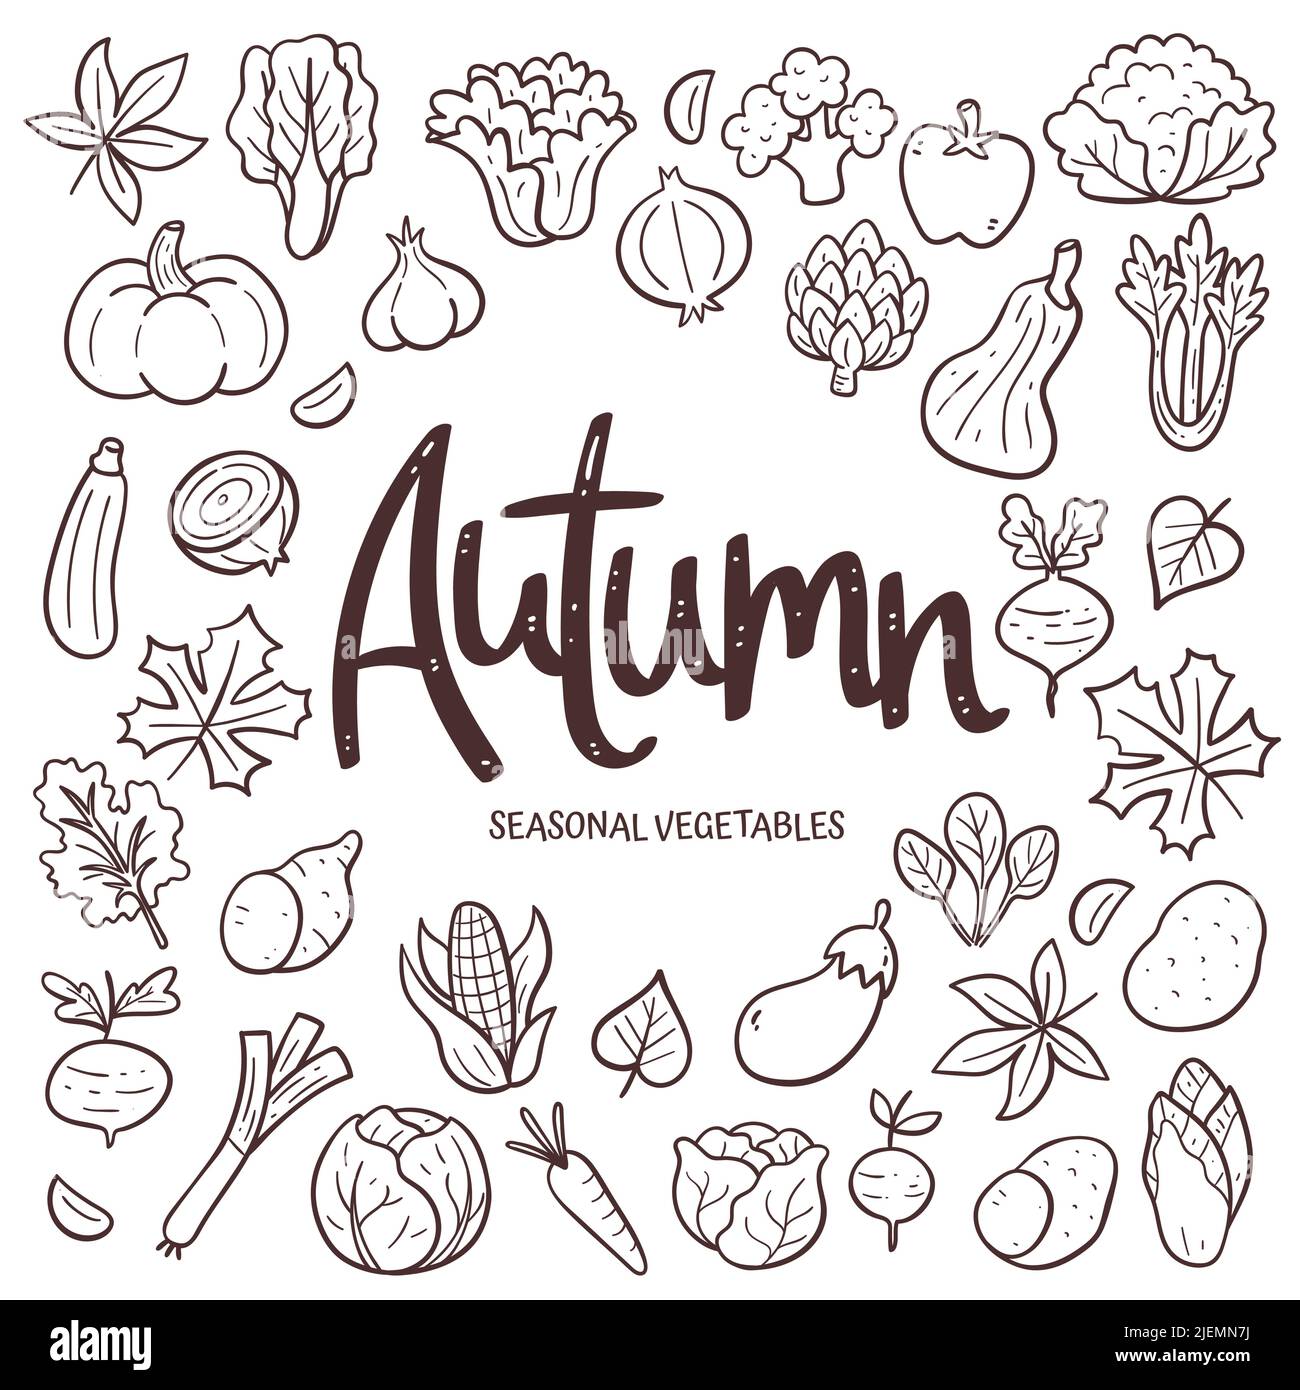 Saisonales Gemüse im Hintergrund. Handgezeichnete Herbstgemüse Komposition aus Doodle Vektor-Icons, isoliert auf weißem Hintergrund. Stock Vektor